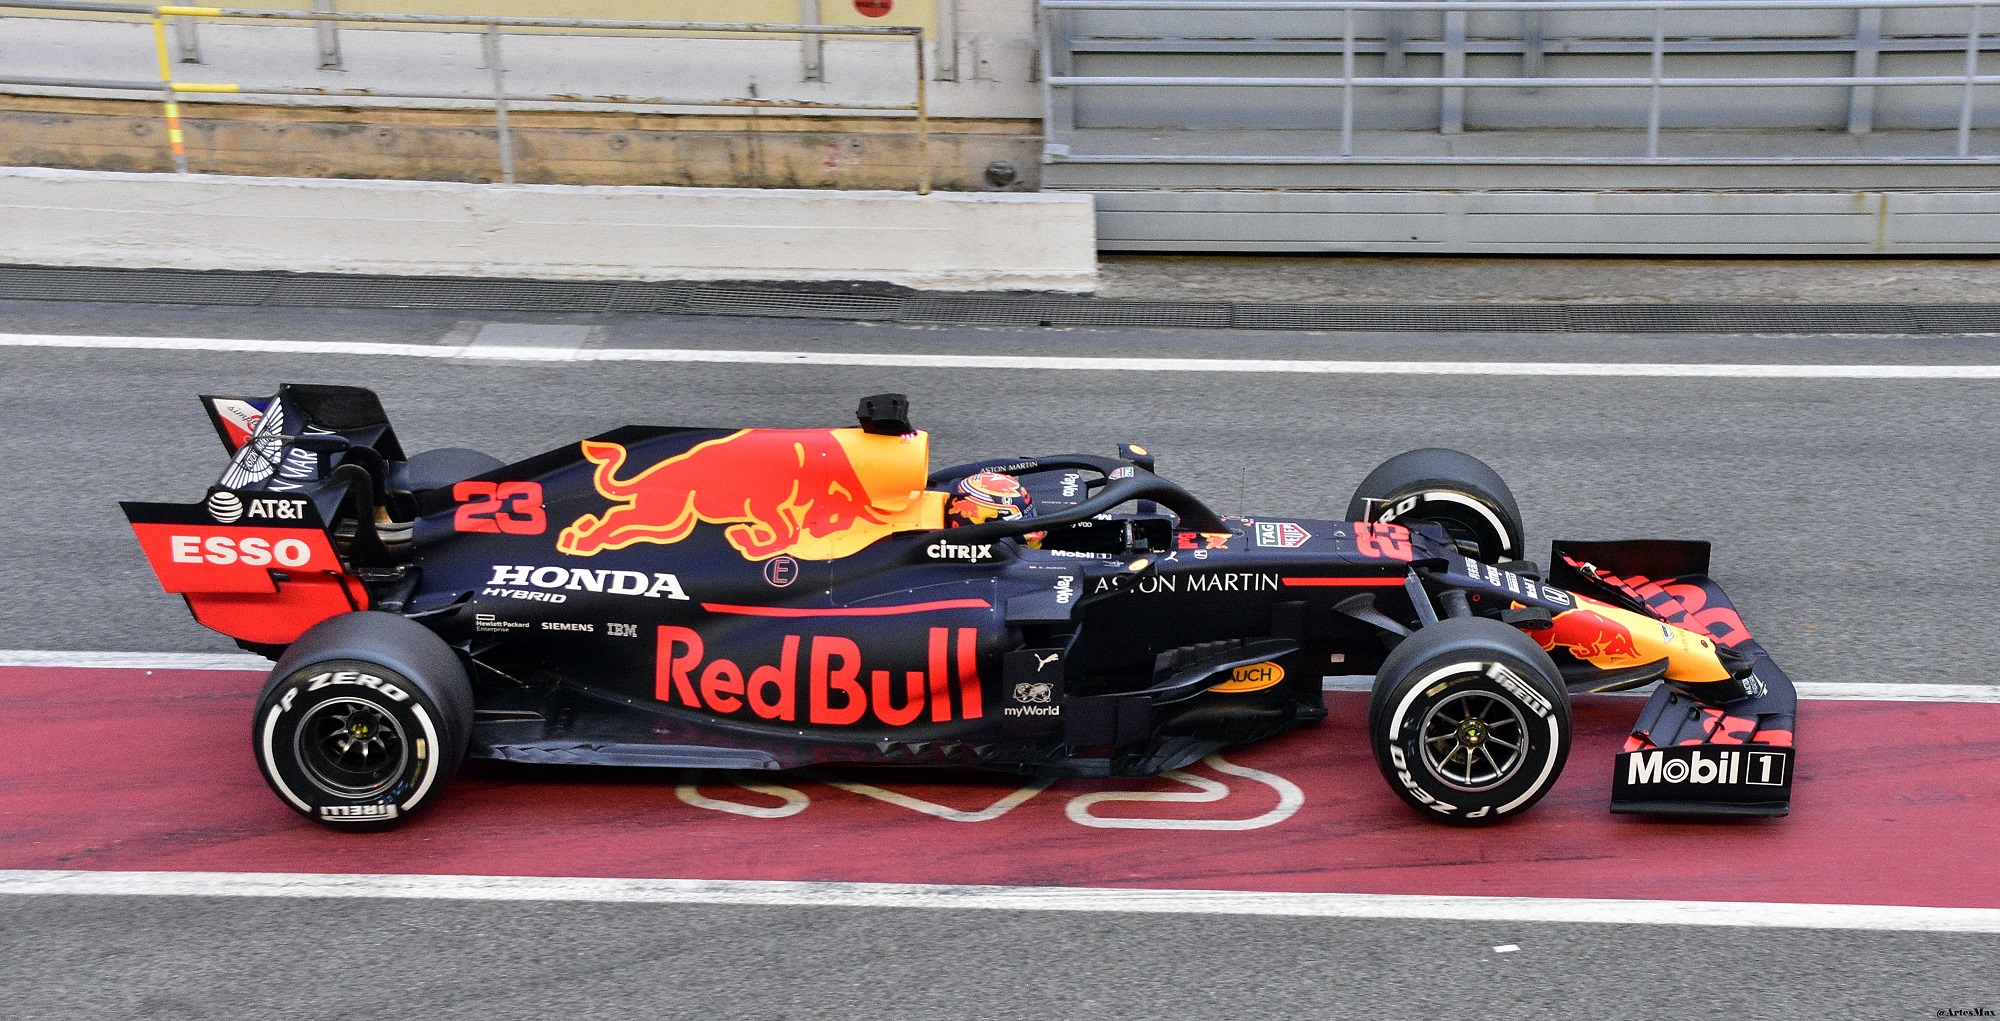 A imagem aparece um carro de fórmula 1 com adesivos da Red Bull.